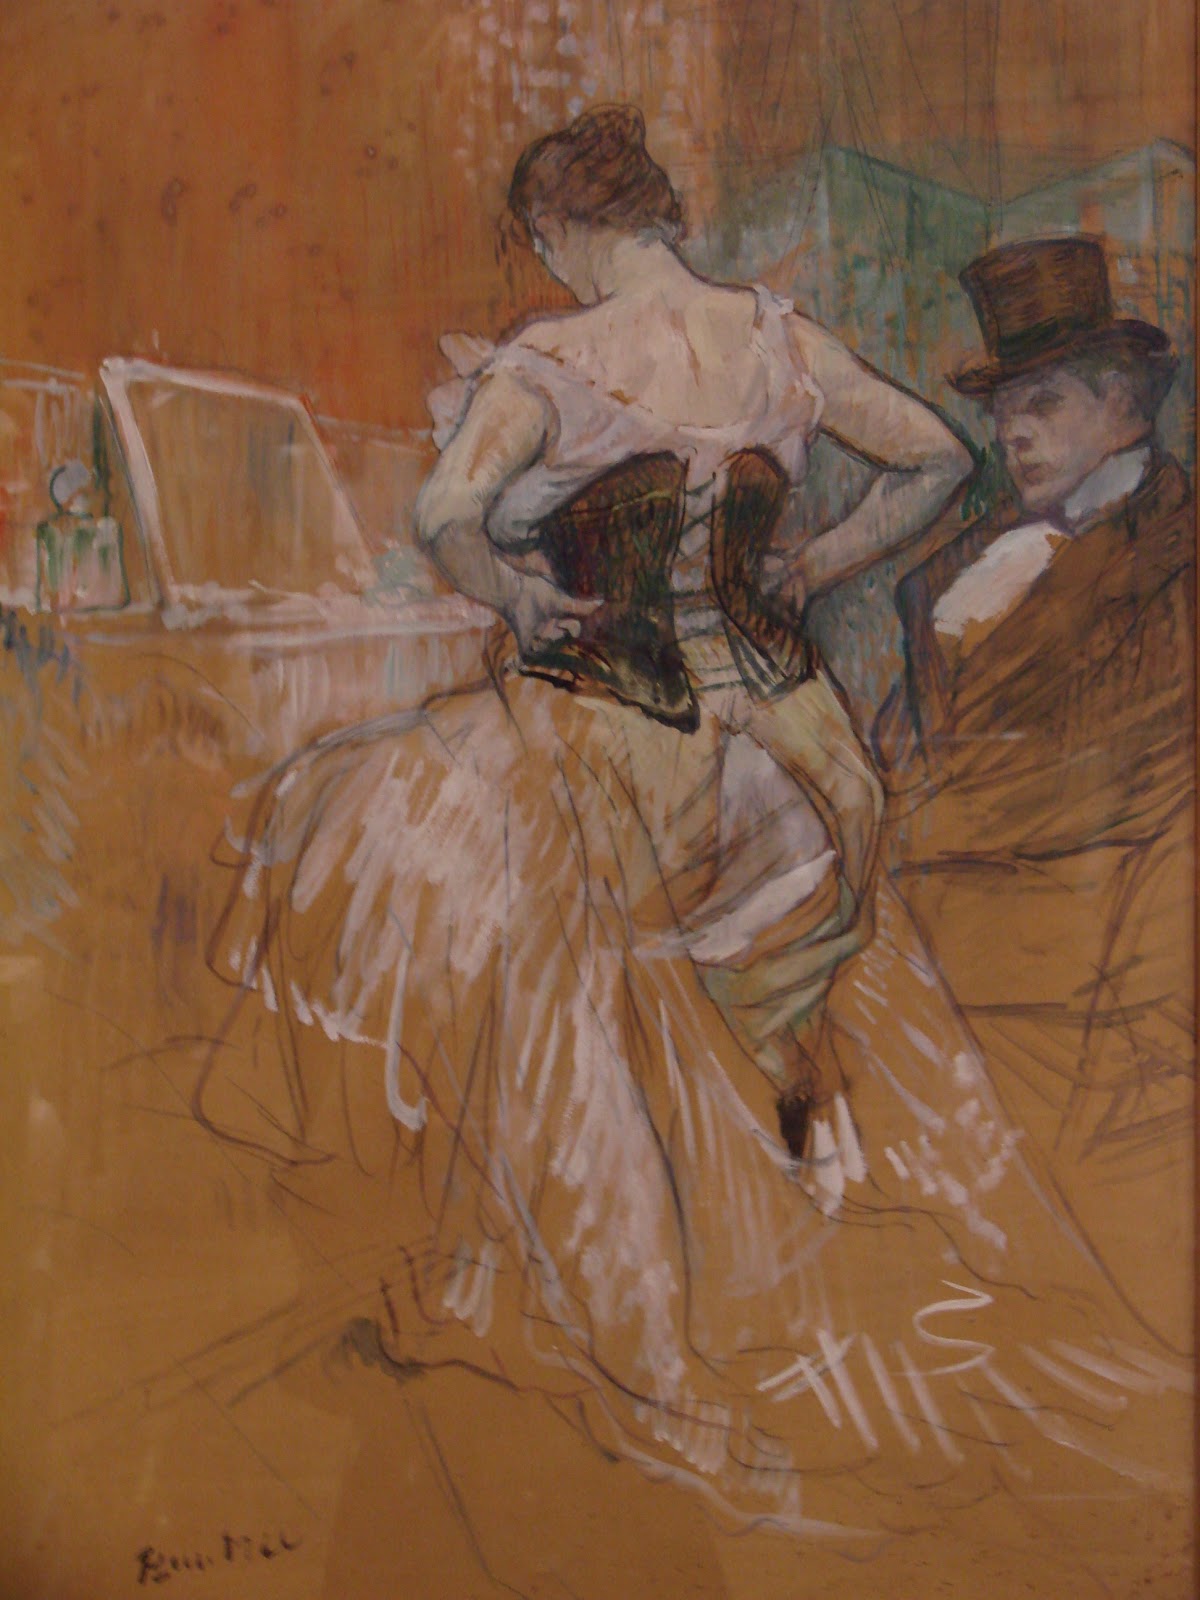 Henri+de+Toulouse+Lautrec-1864-1901 (37).jpg